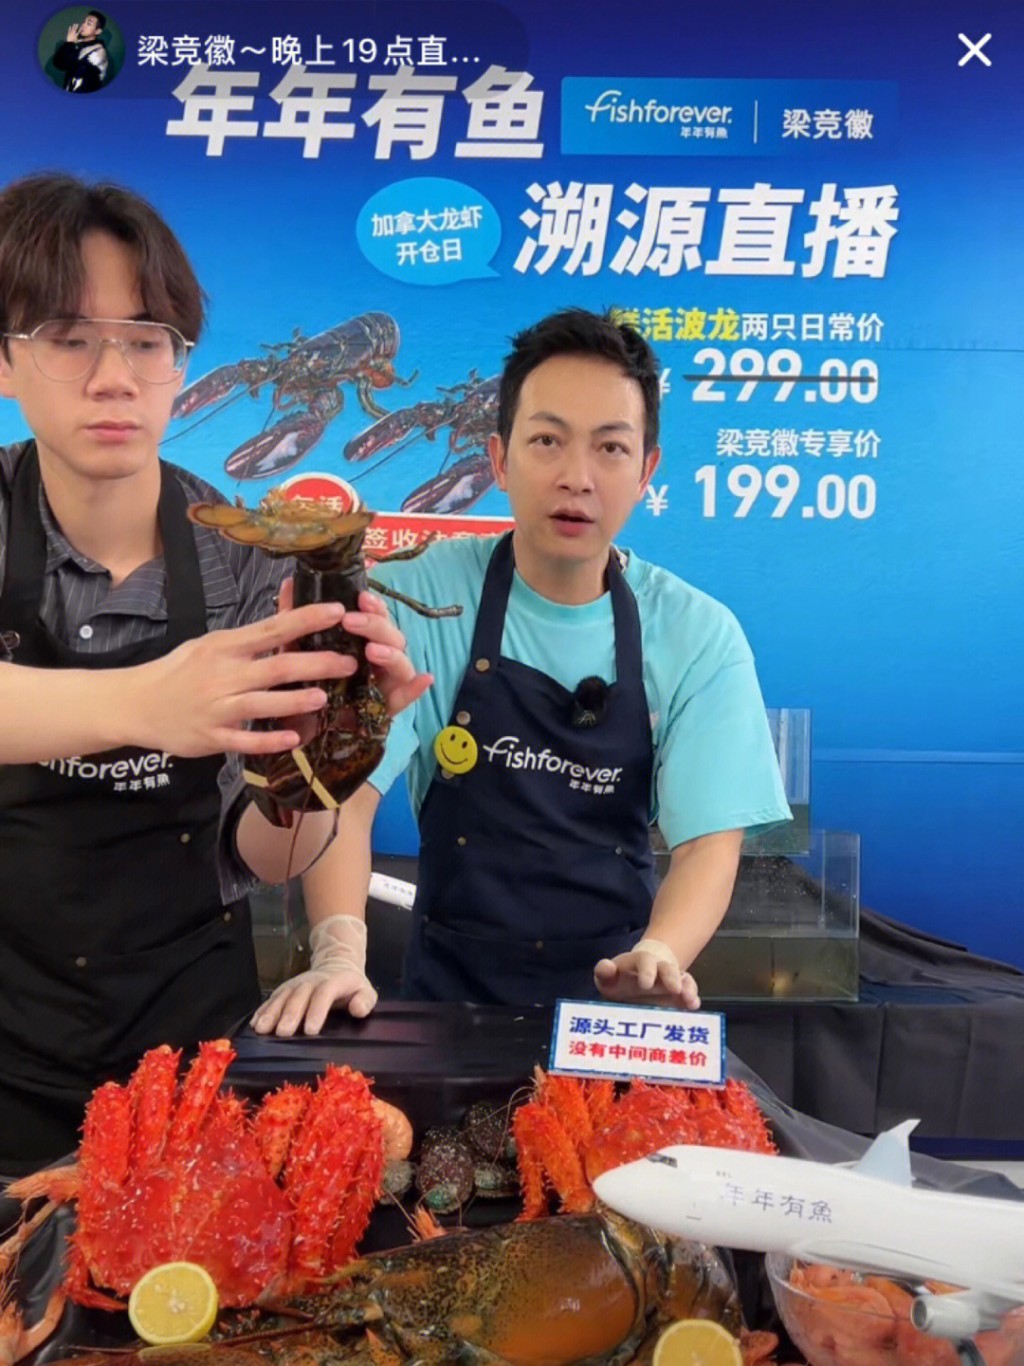 梁竞徽最近试过直播带货卖龙虾。